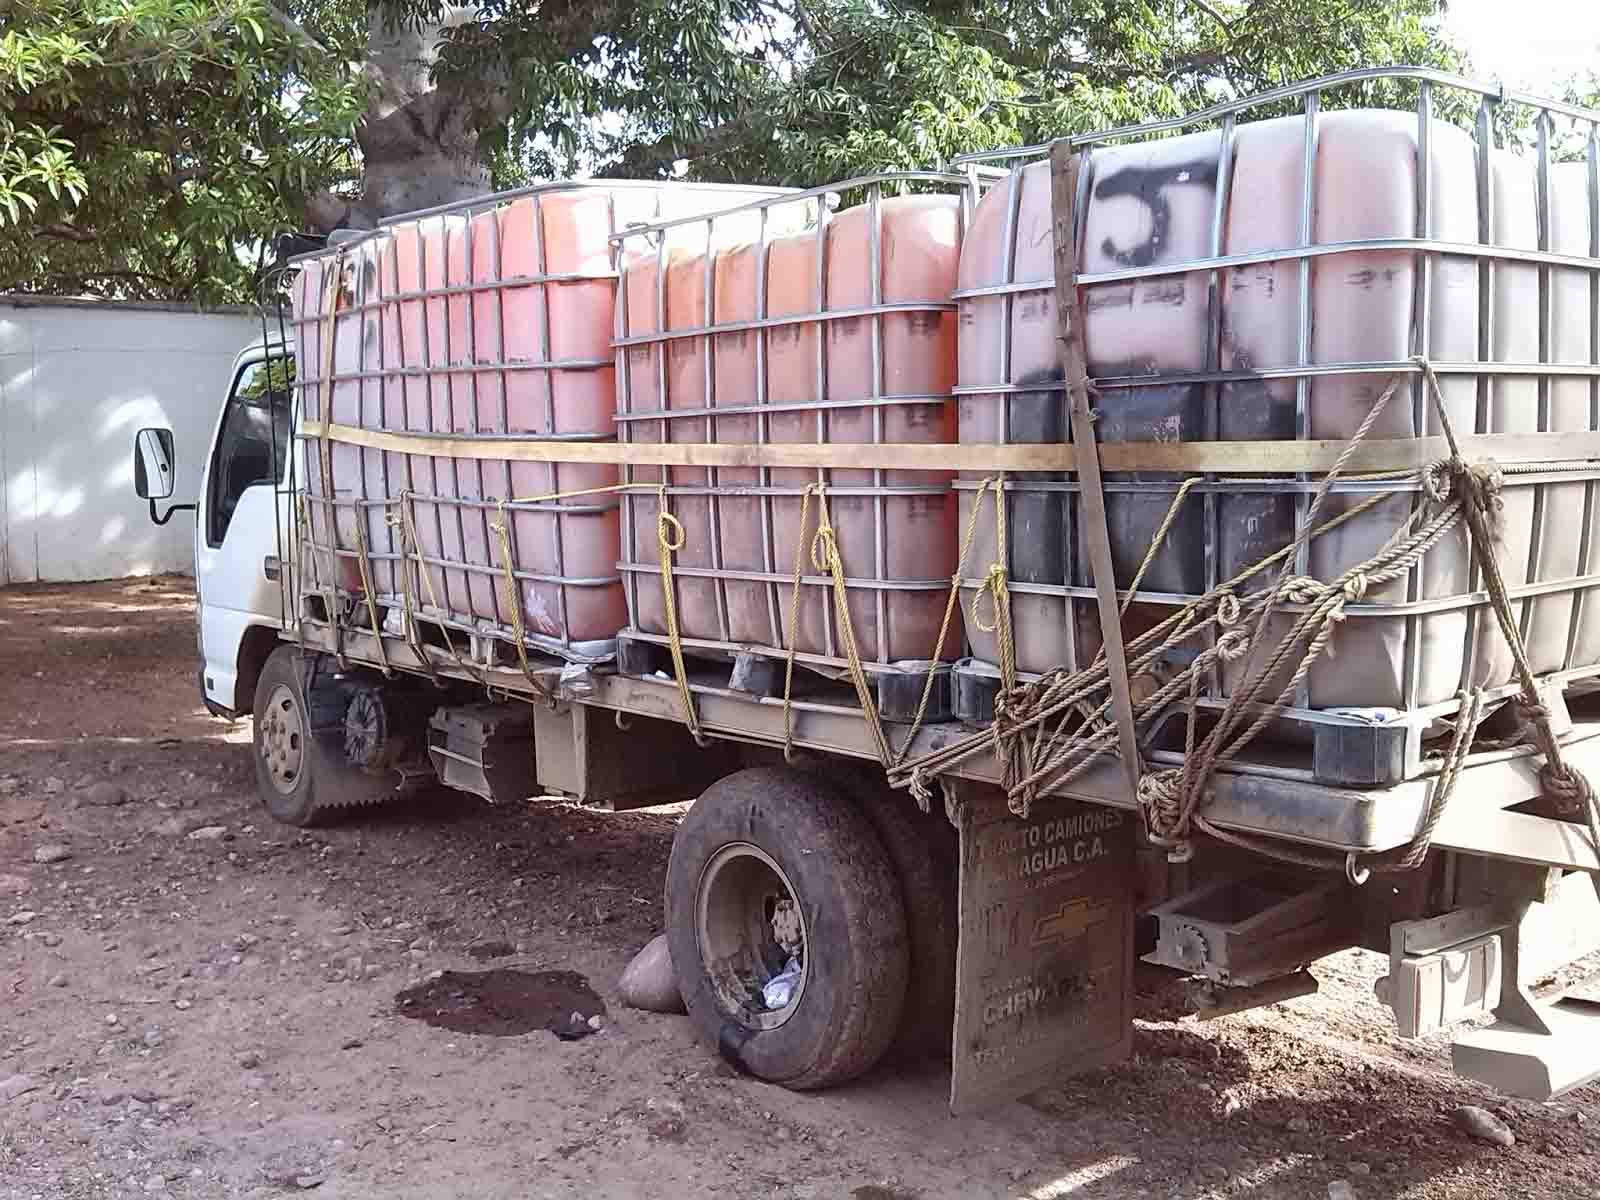 El combustible descubierto iba a ser transportado a la frontera colombo-venezolana para luego ser vendido